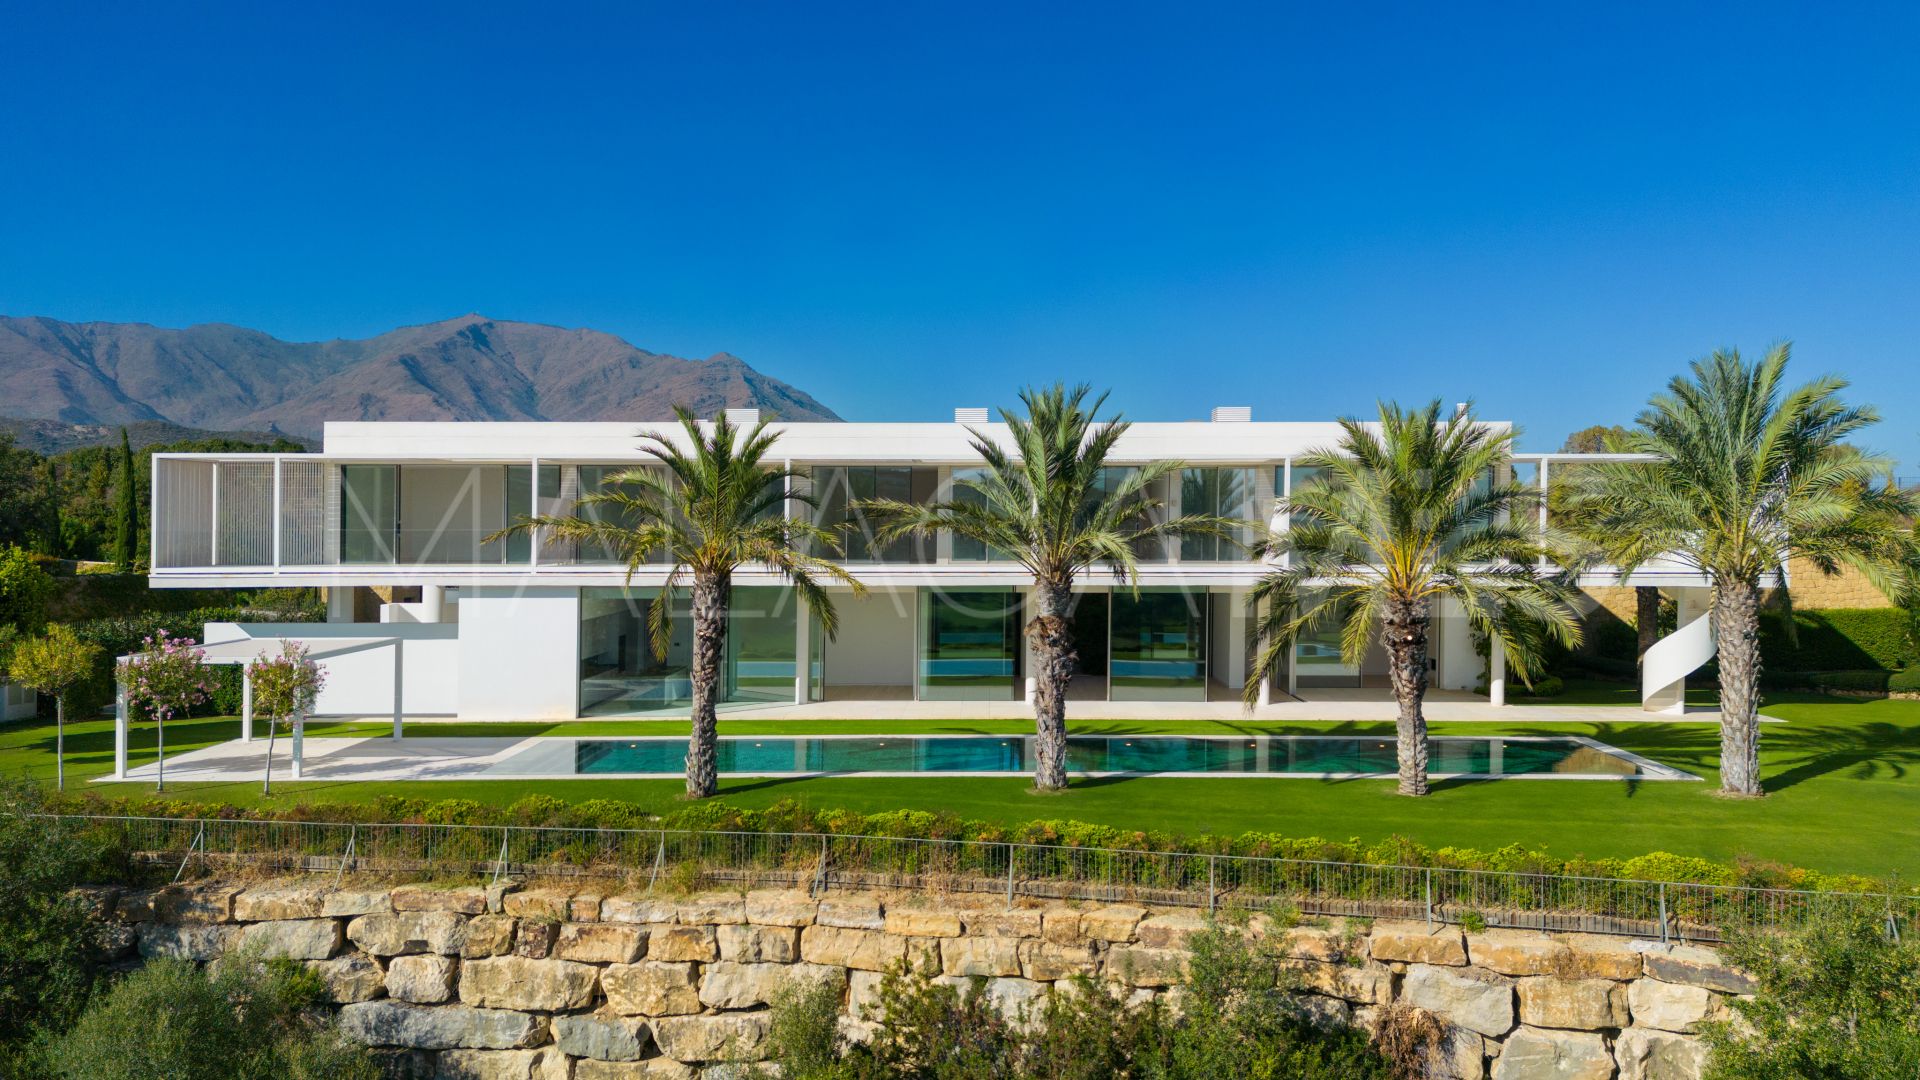 5 bedrooms villa in Casares Montaña for sale